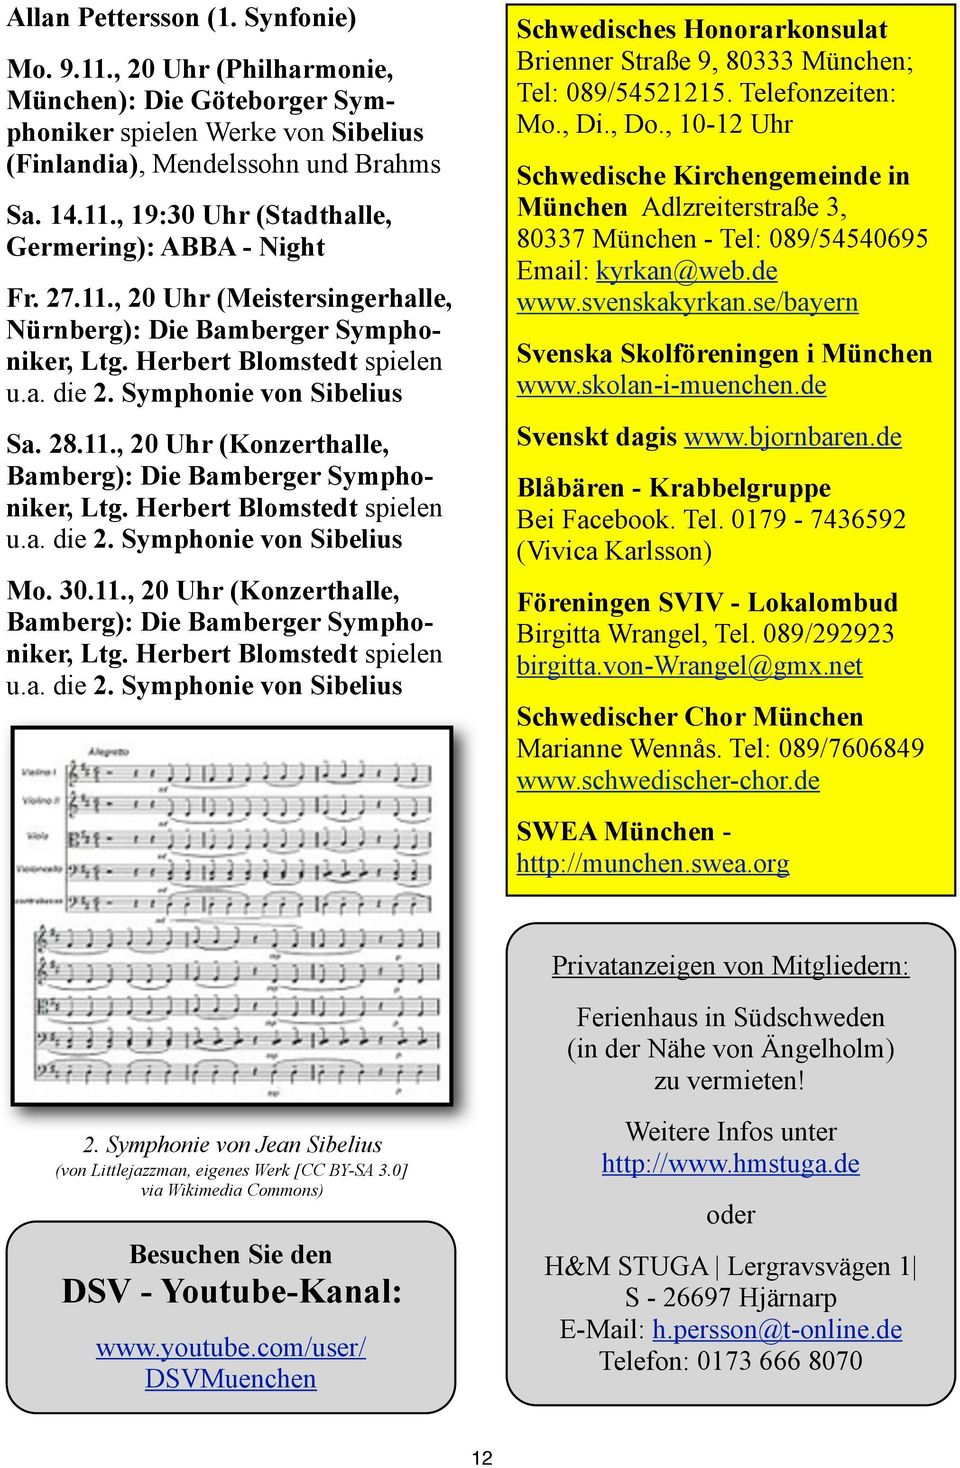 Herbert Blomstedt spielen u.a. die 2. Symphonie von Sibelius Mo. 30.11., 20 Uhr (Konzerthalle, Bamberg): Die Bamberger Symphoniker, Ltg. Herbert Blomstedt spielen u.a. die 2. Symphonie von Sibelius Schwedisches Honorarkonsulat Brienner Straße 9, 80333 München; Tel: 089/54521215.